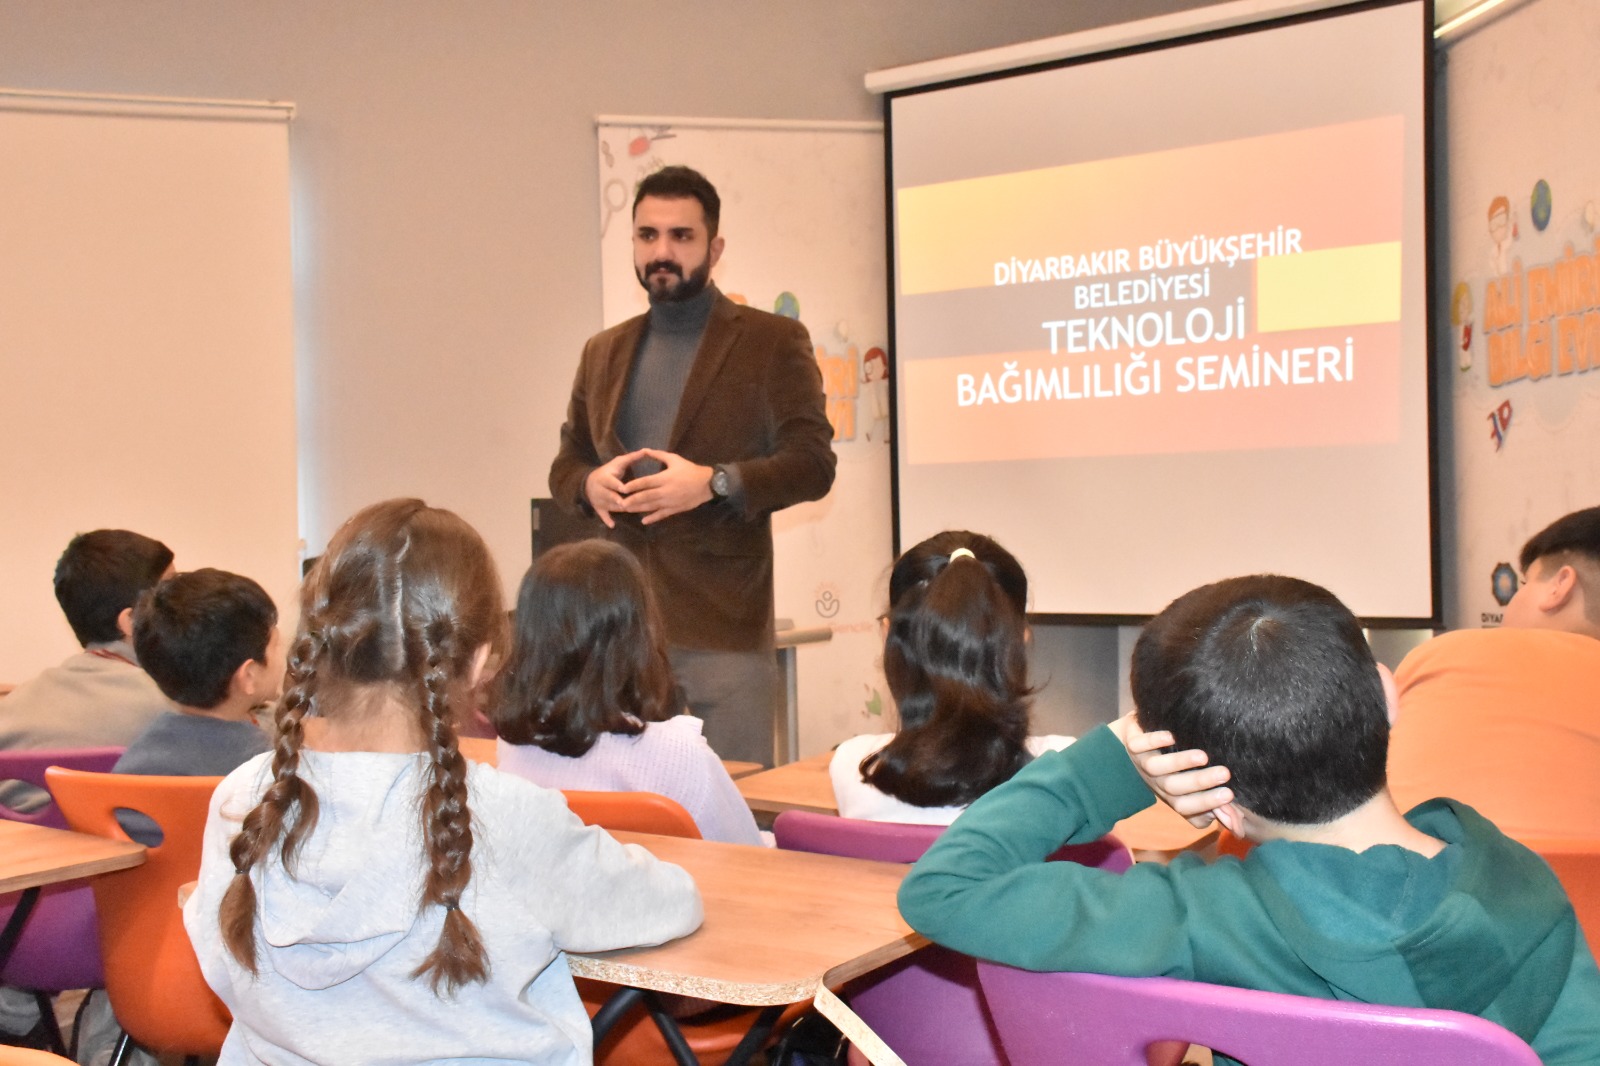 Diyarbakır’daki öğrencilere teknolojik bağımlılık semineri